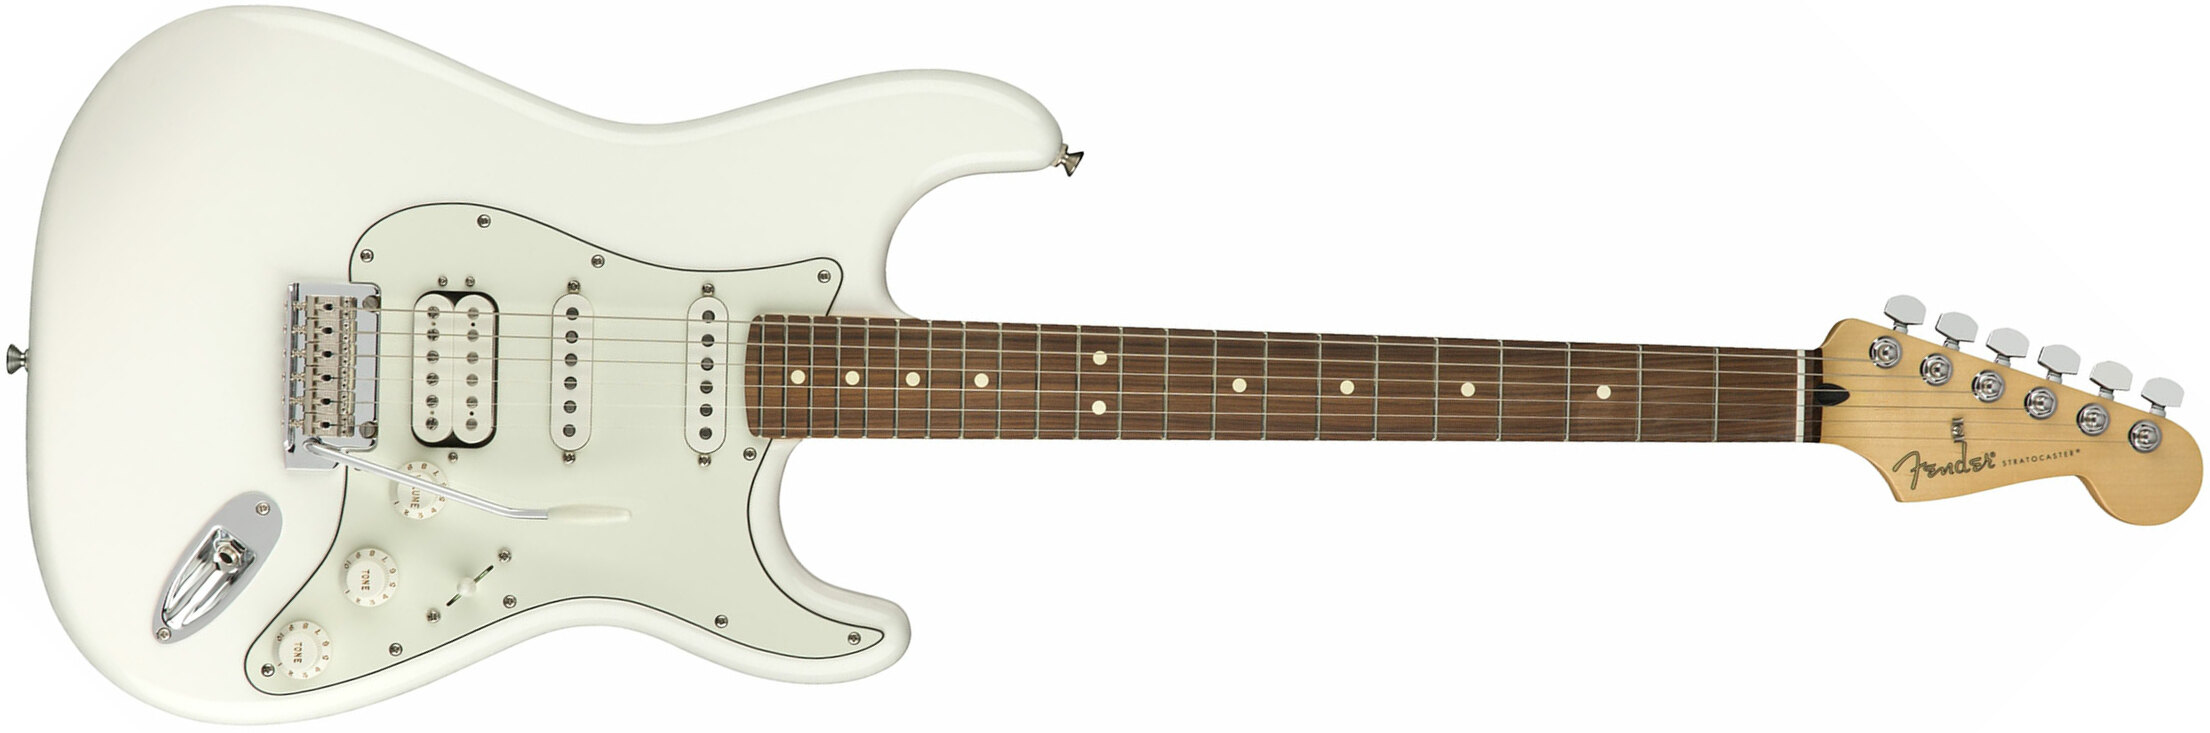 Fender Strat Player Mex Hss Pf - Polar White - Guitare Électrique Forme Str - Main picture